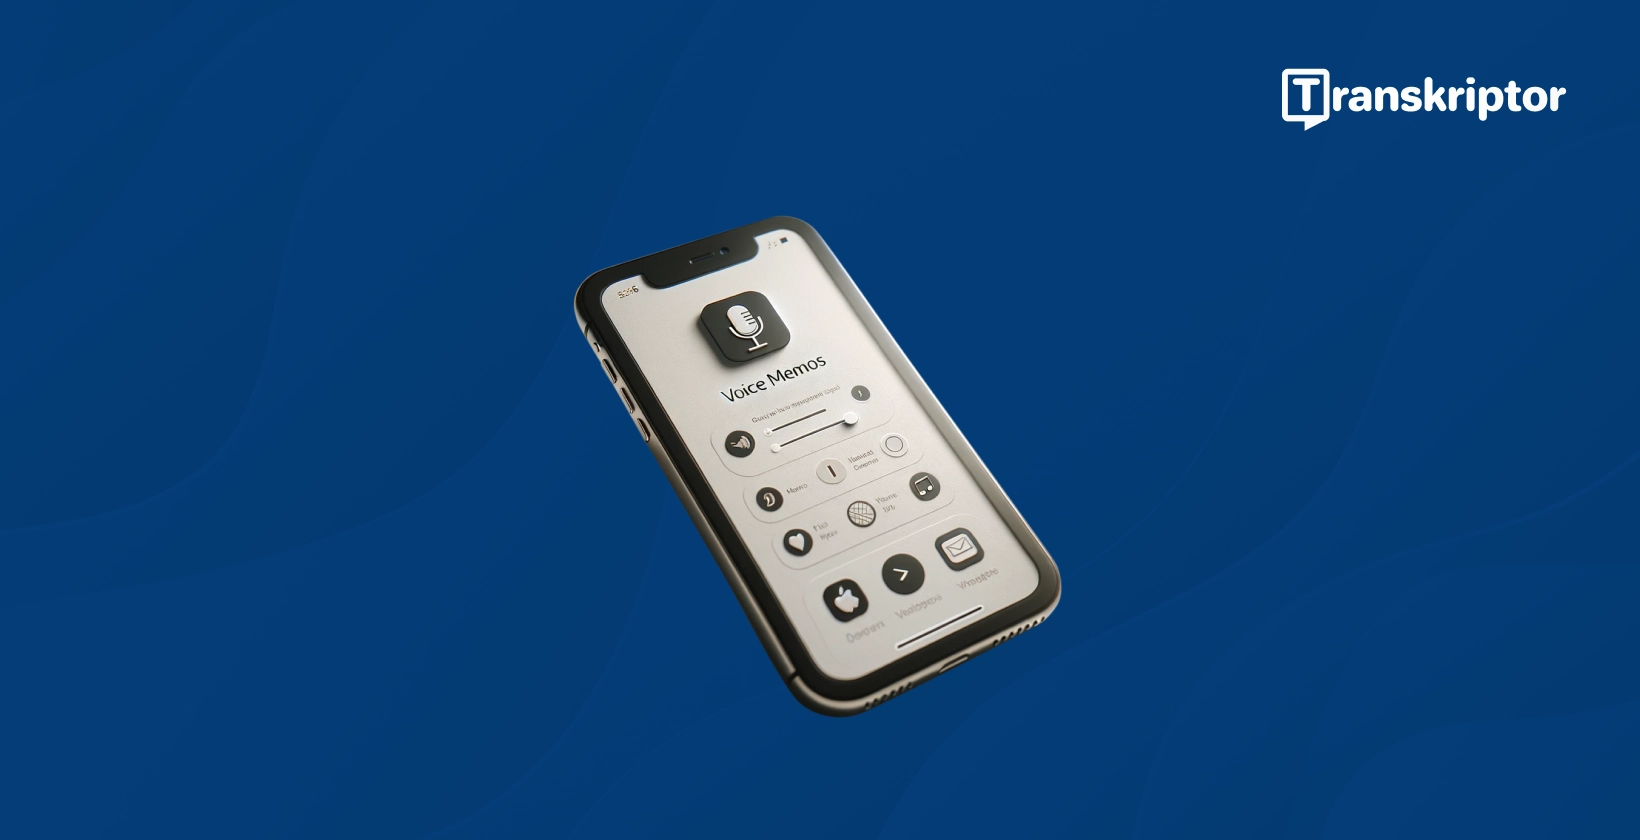 iPhone näyttö, jossa näkyy Äänimuistiot-sovelluksen käyttöliittymä äänen transkriptoimiseen tekstiksi.